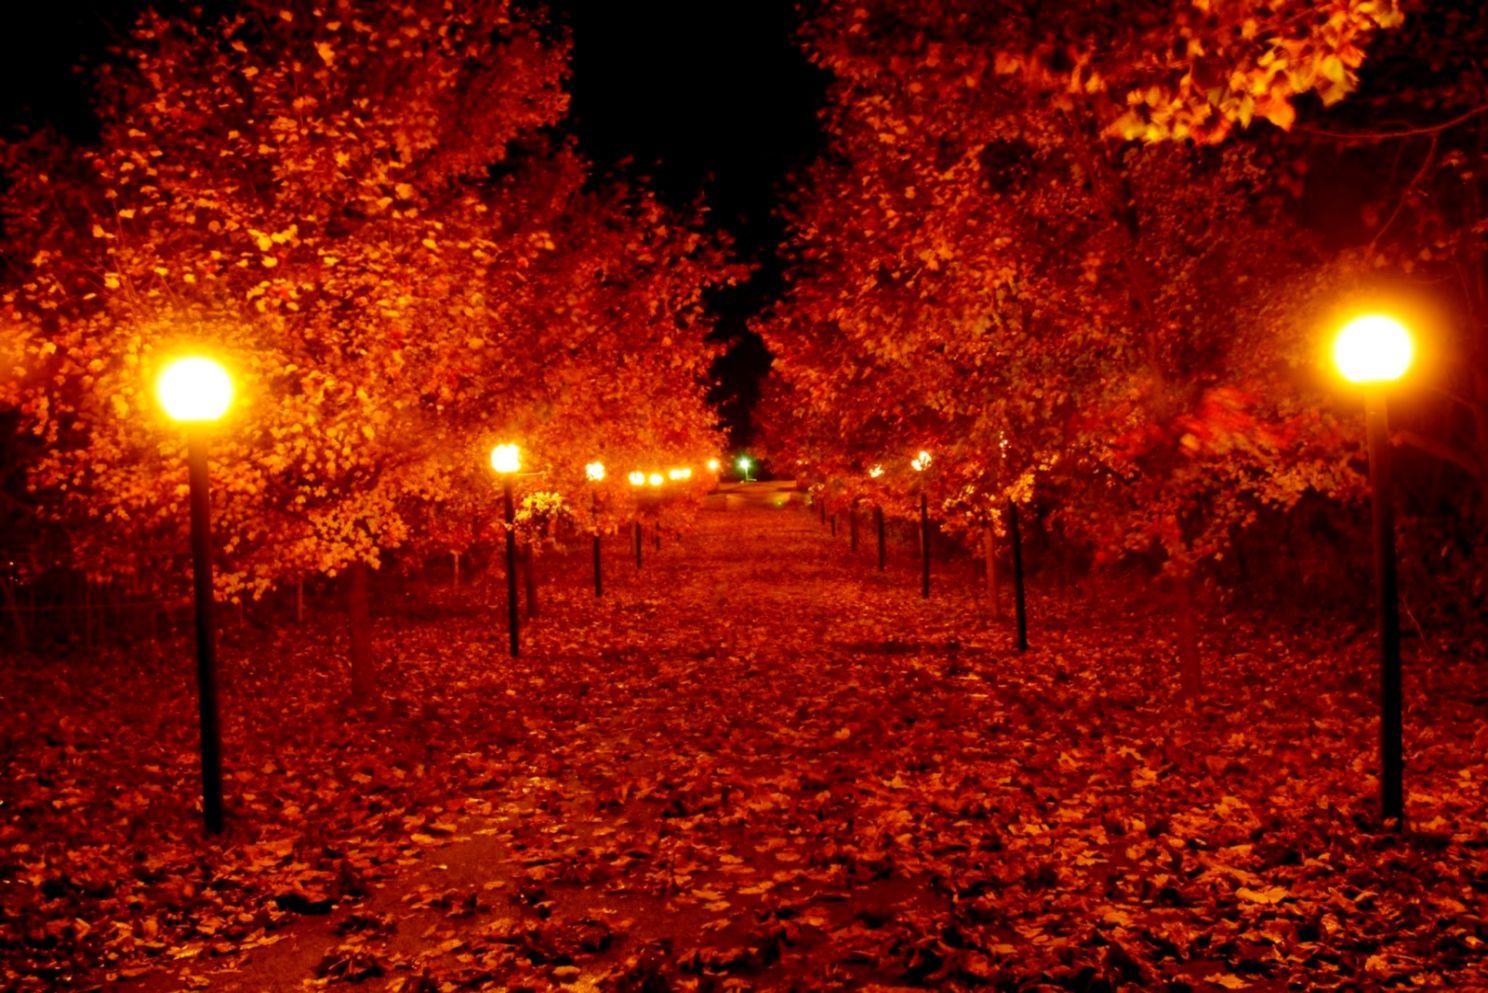 Autumn Night Wallpaper Free Autumn Night Background